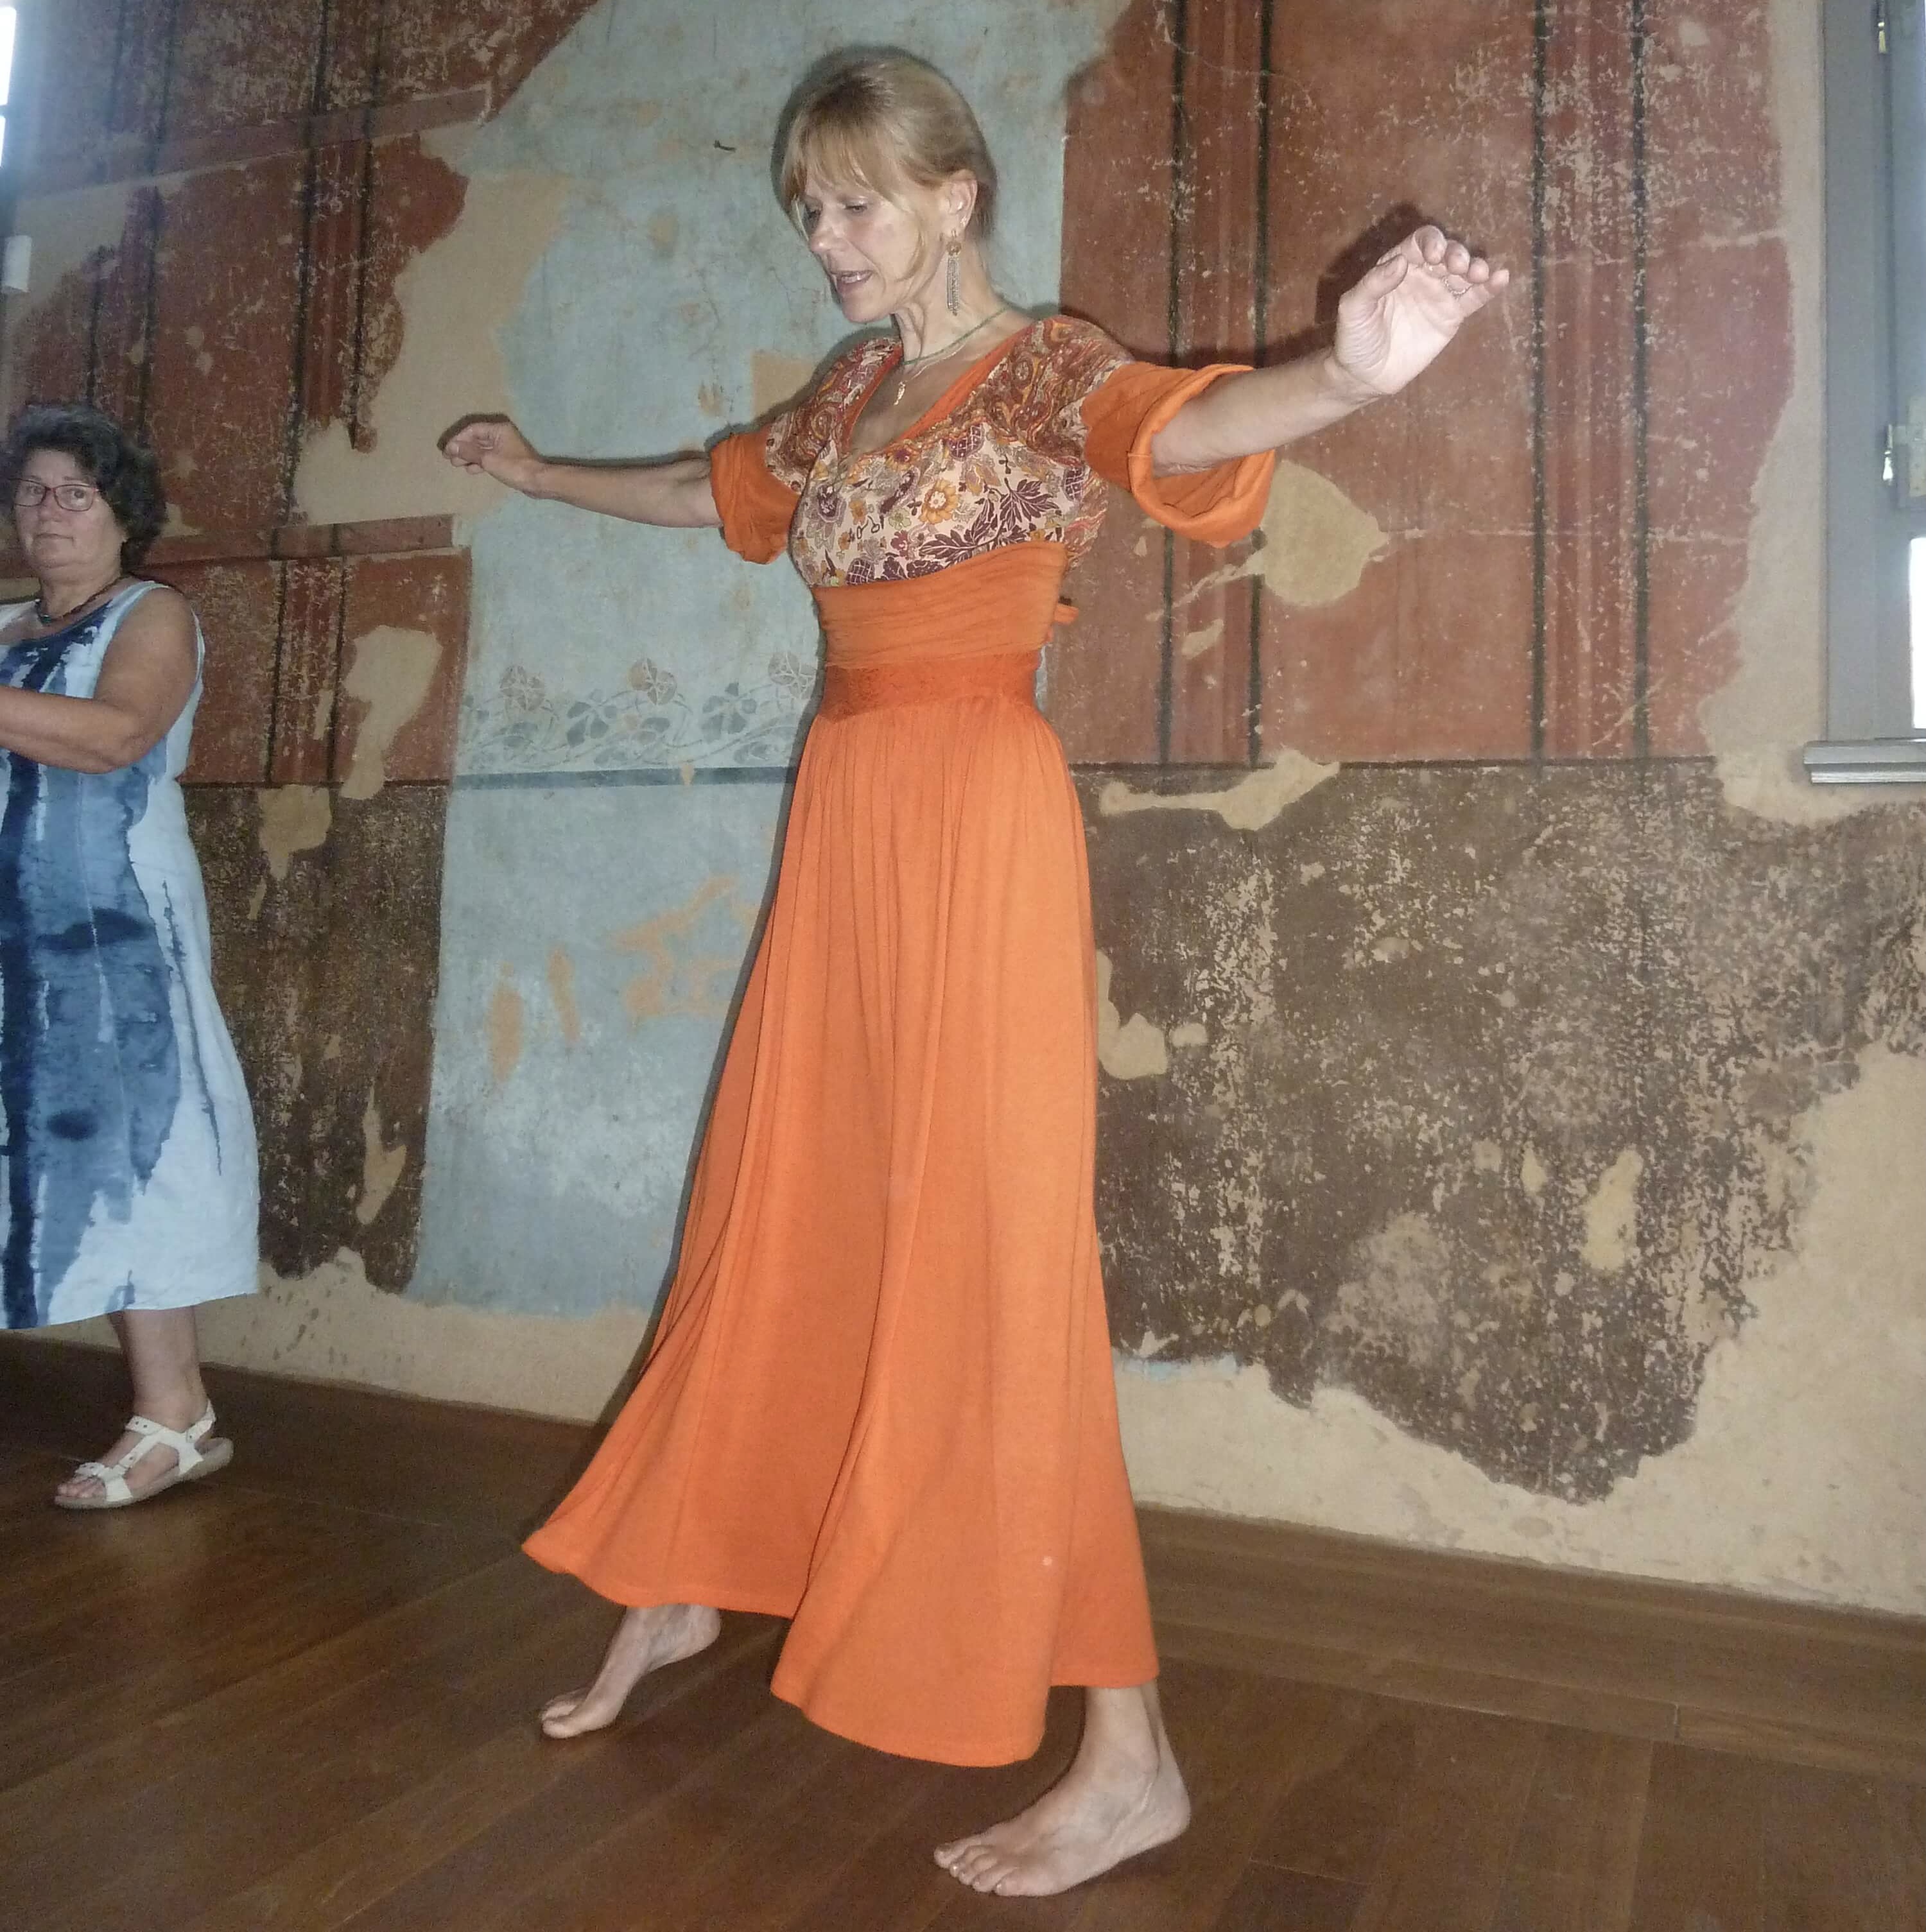 Tanzende Frau vor dem Wandabdruck des Thoraschreins 